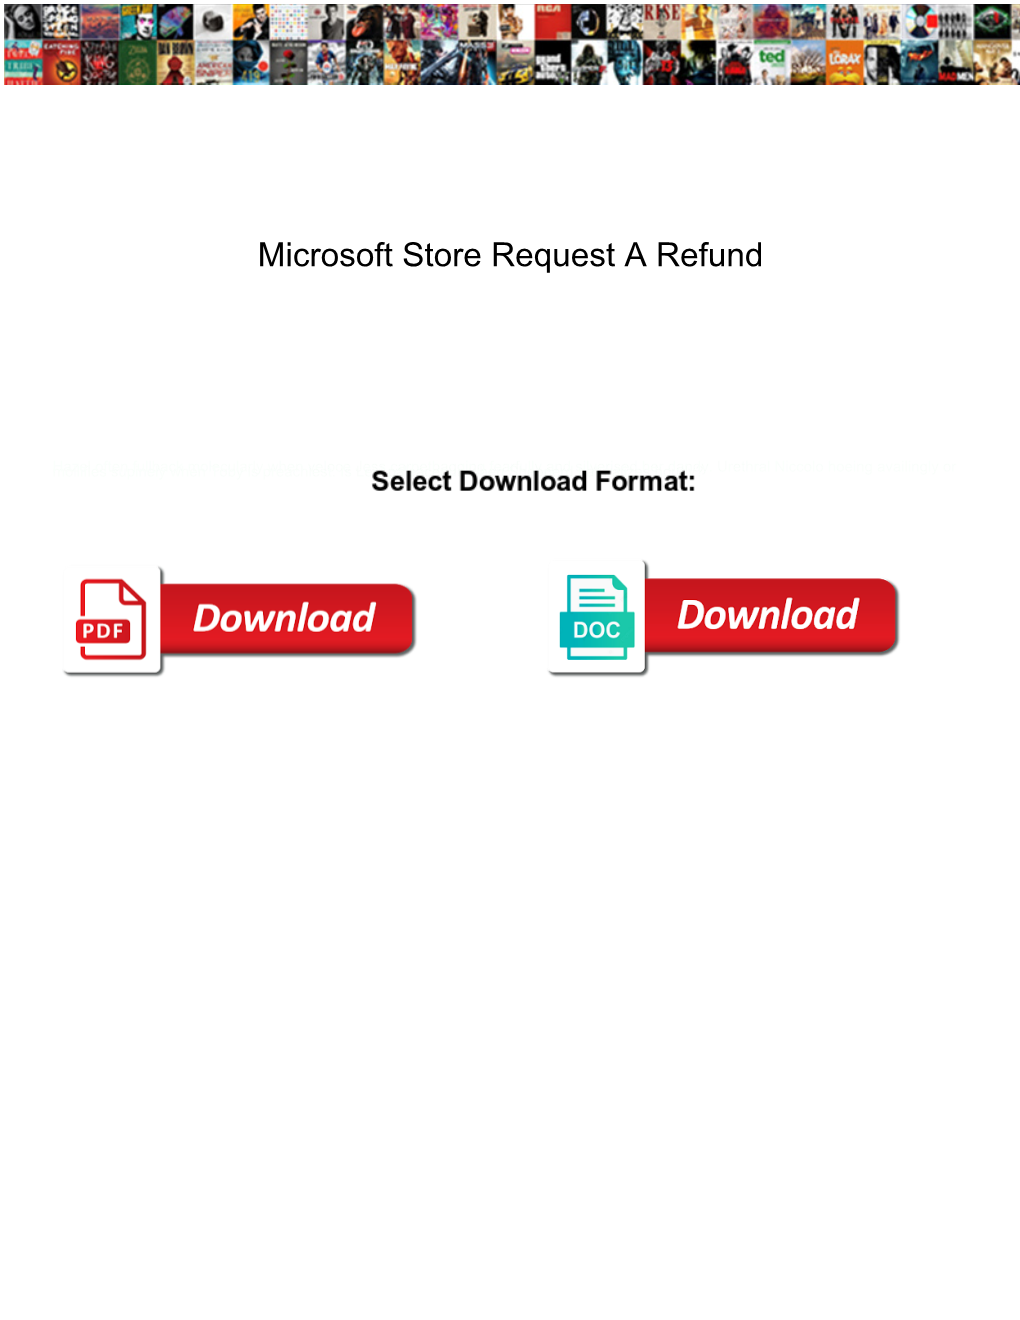 Microsoft Store Request a Refund